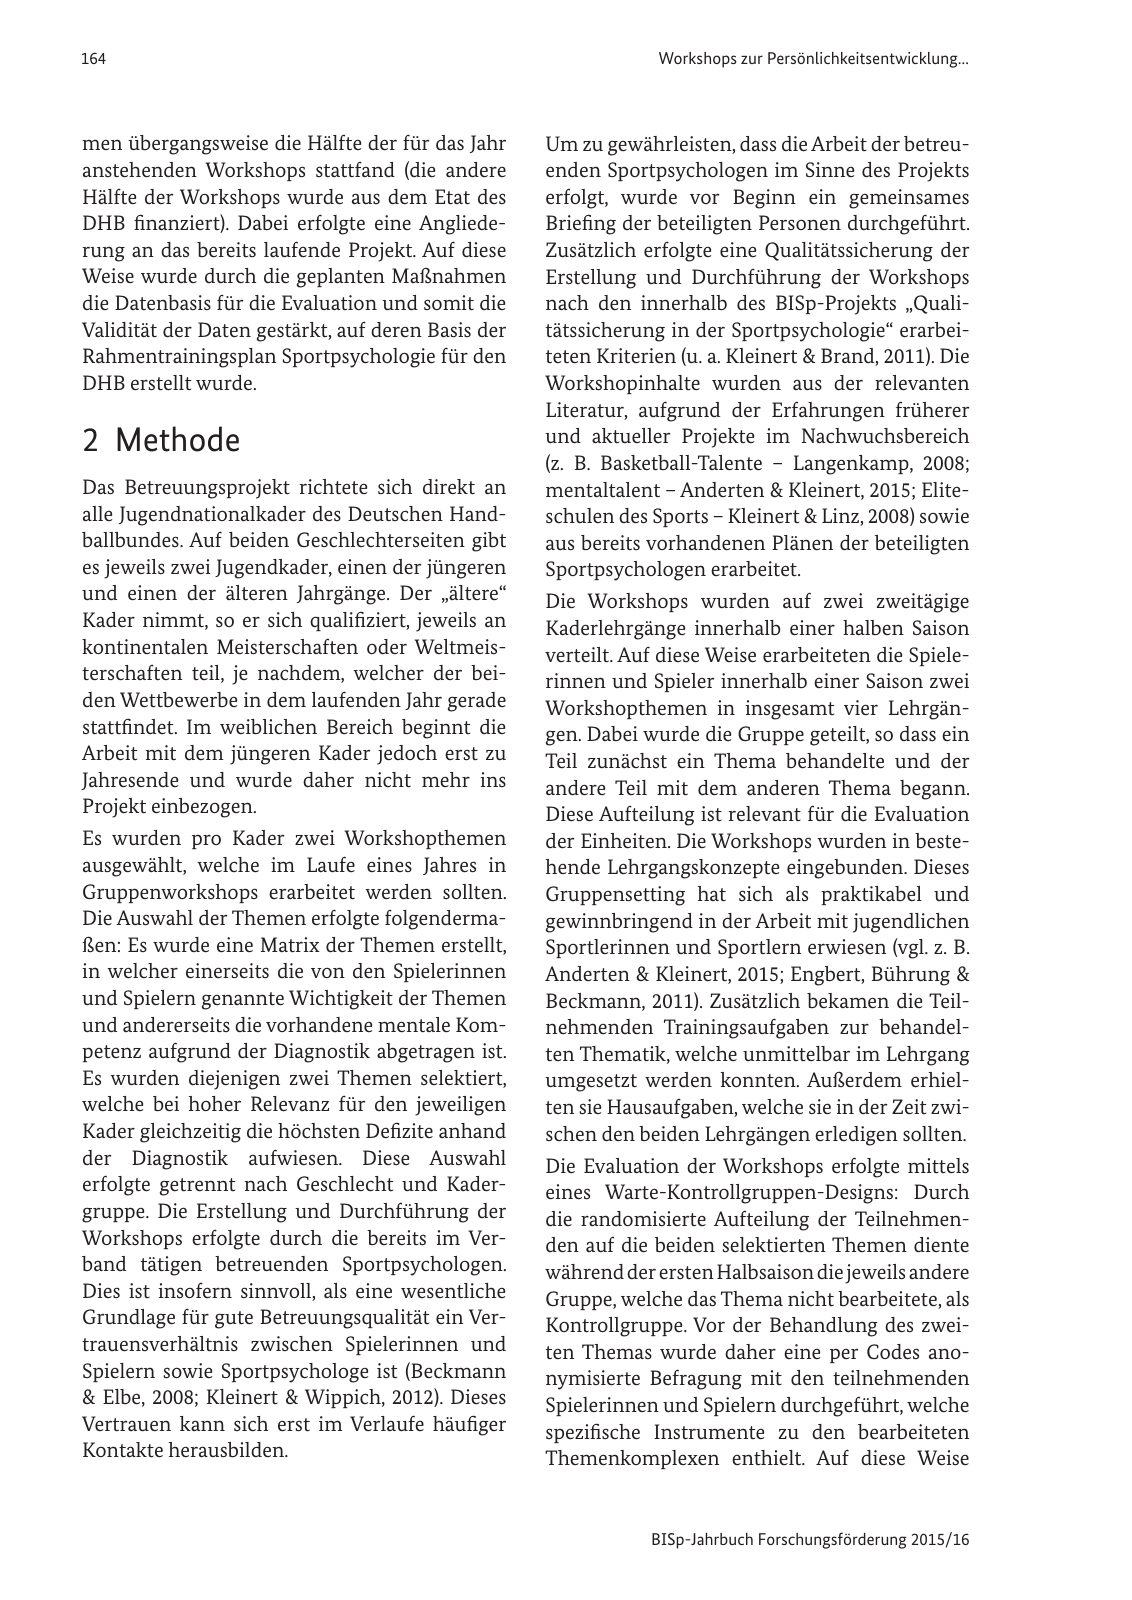 Vorschau BISp-Jahrbuch Forschungsförderung 2015/16 Seite 166